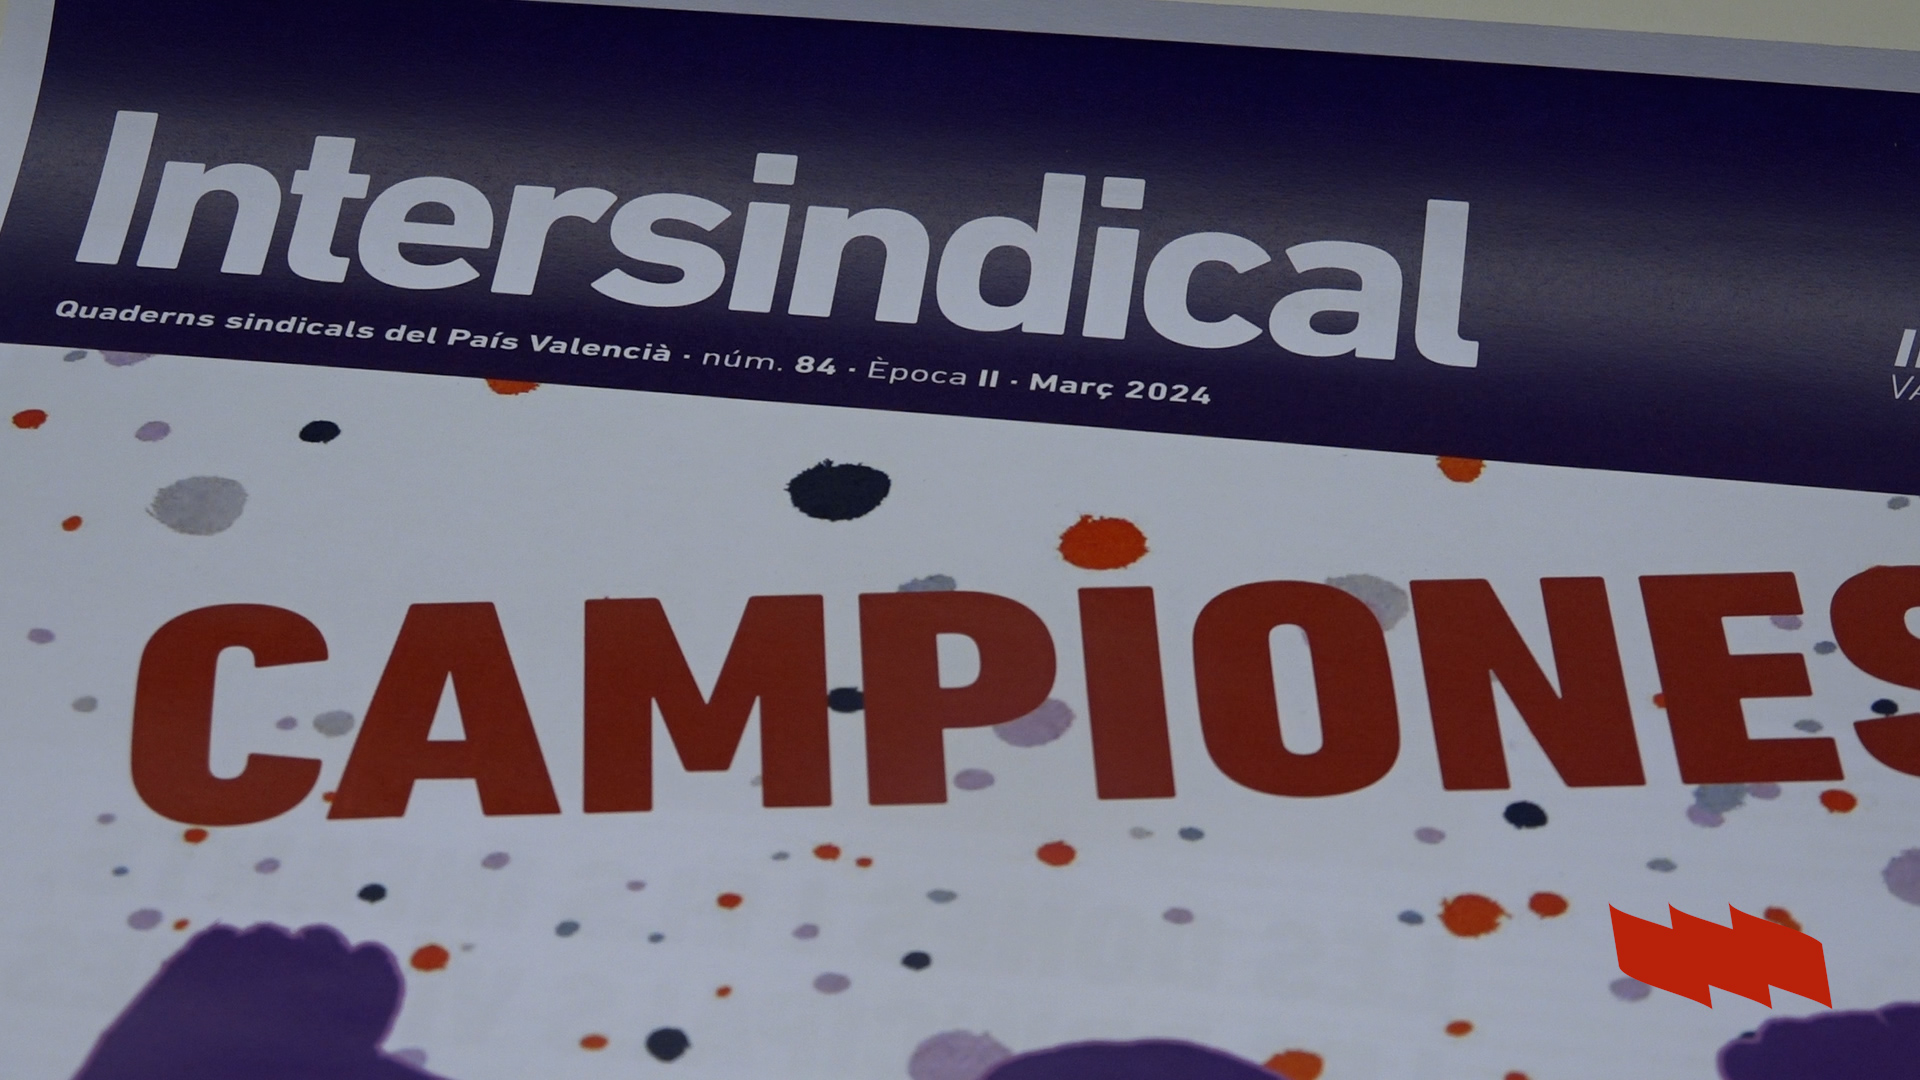 Campiones! - Revista Intersindical 8M 2024